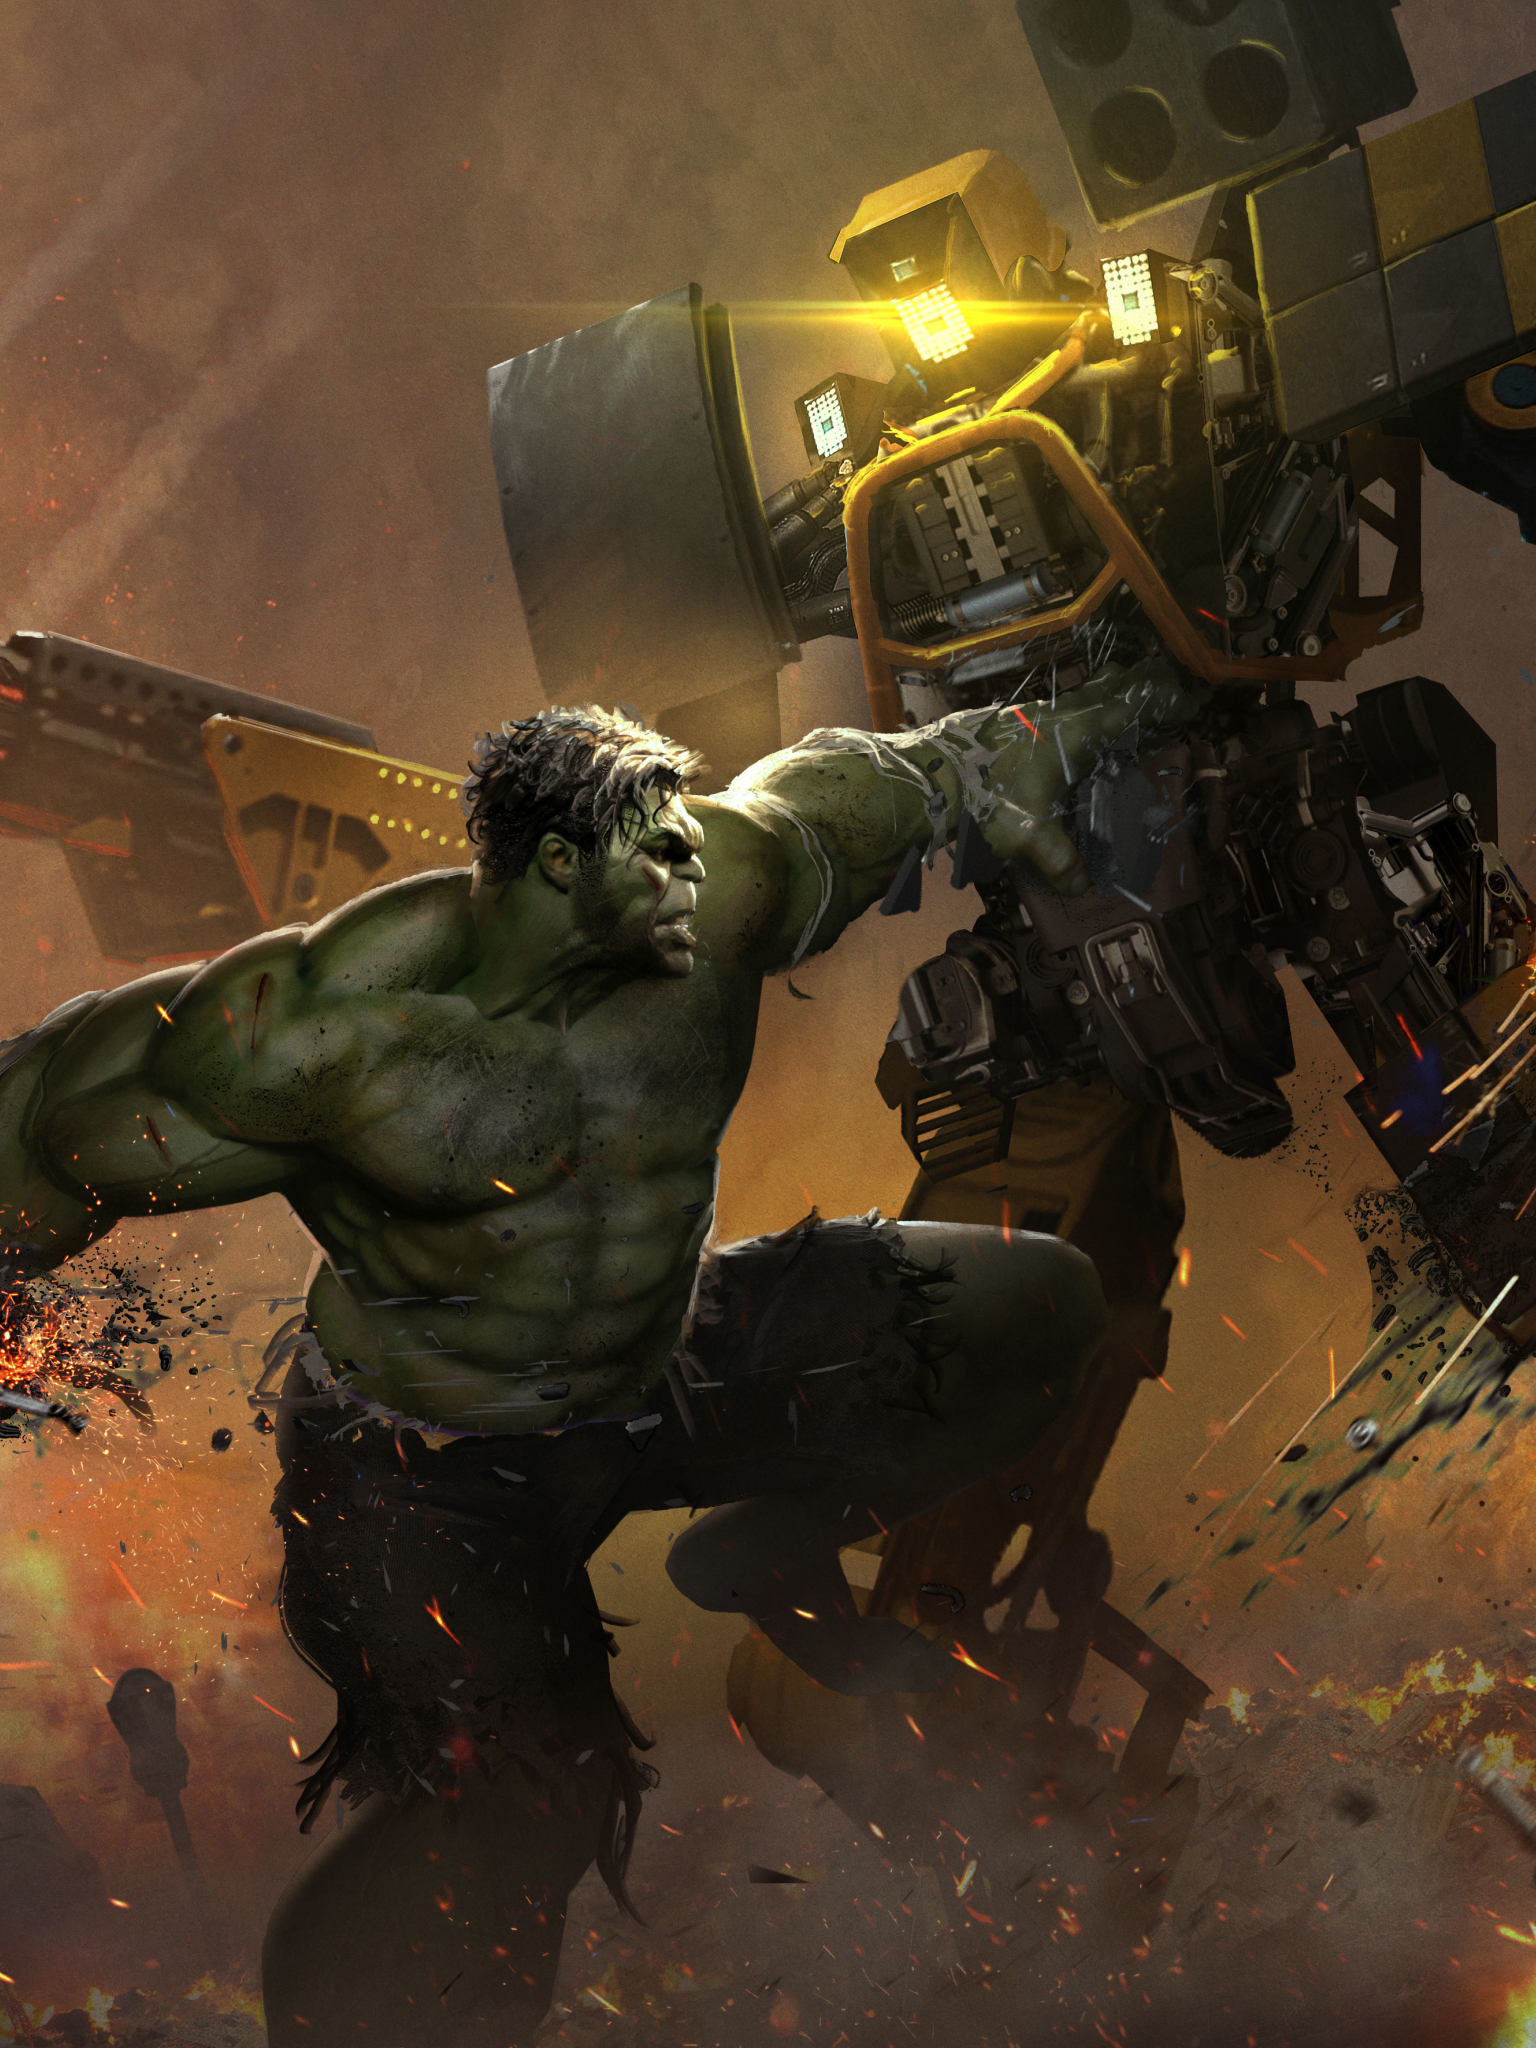 Smash Hulk 5K Marvel's Avengers (1536x2048) Resolution Wallpaper.